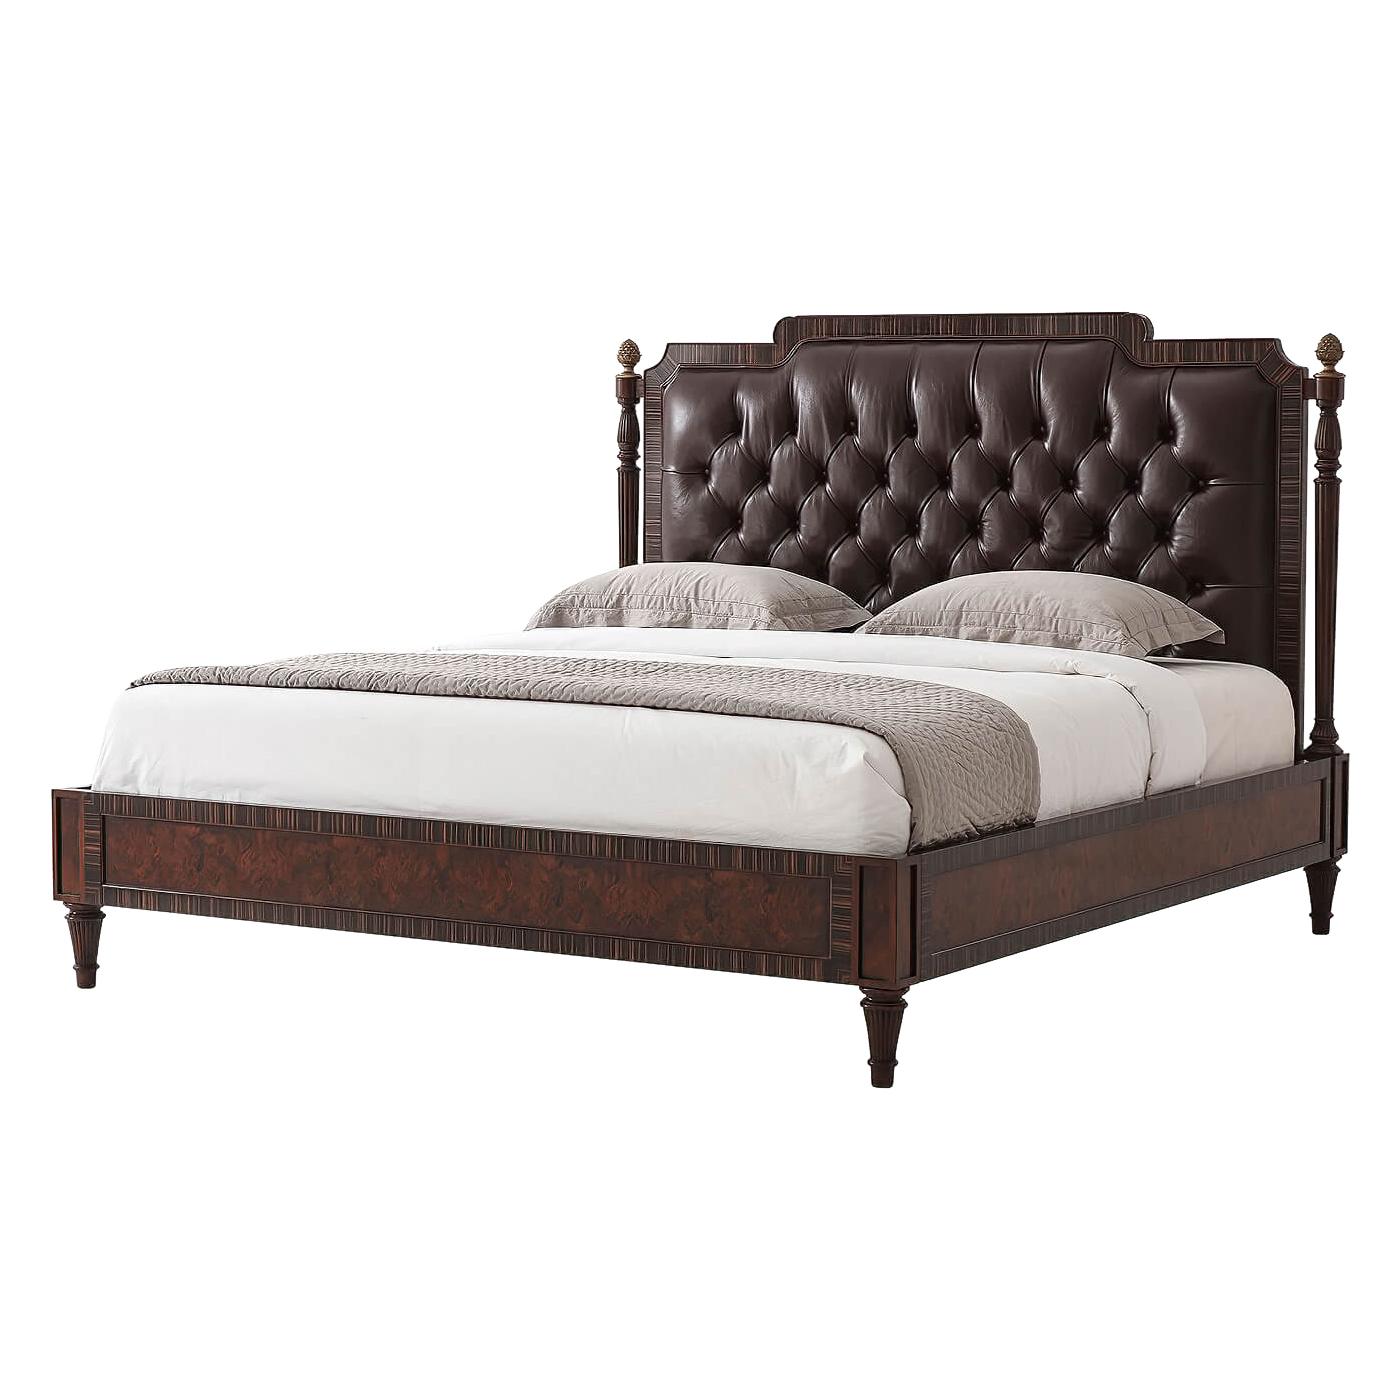 Regency Style King Size Bed